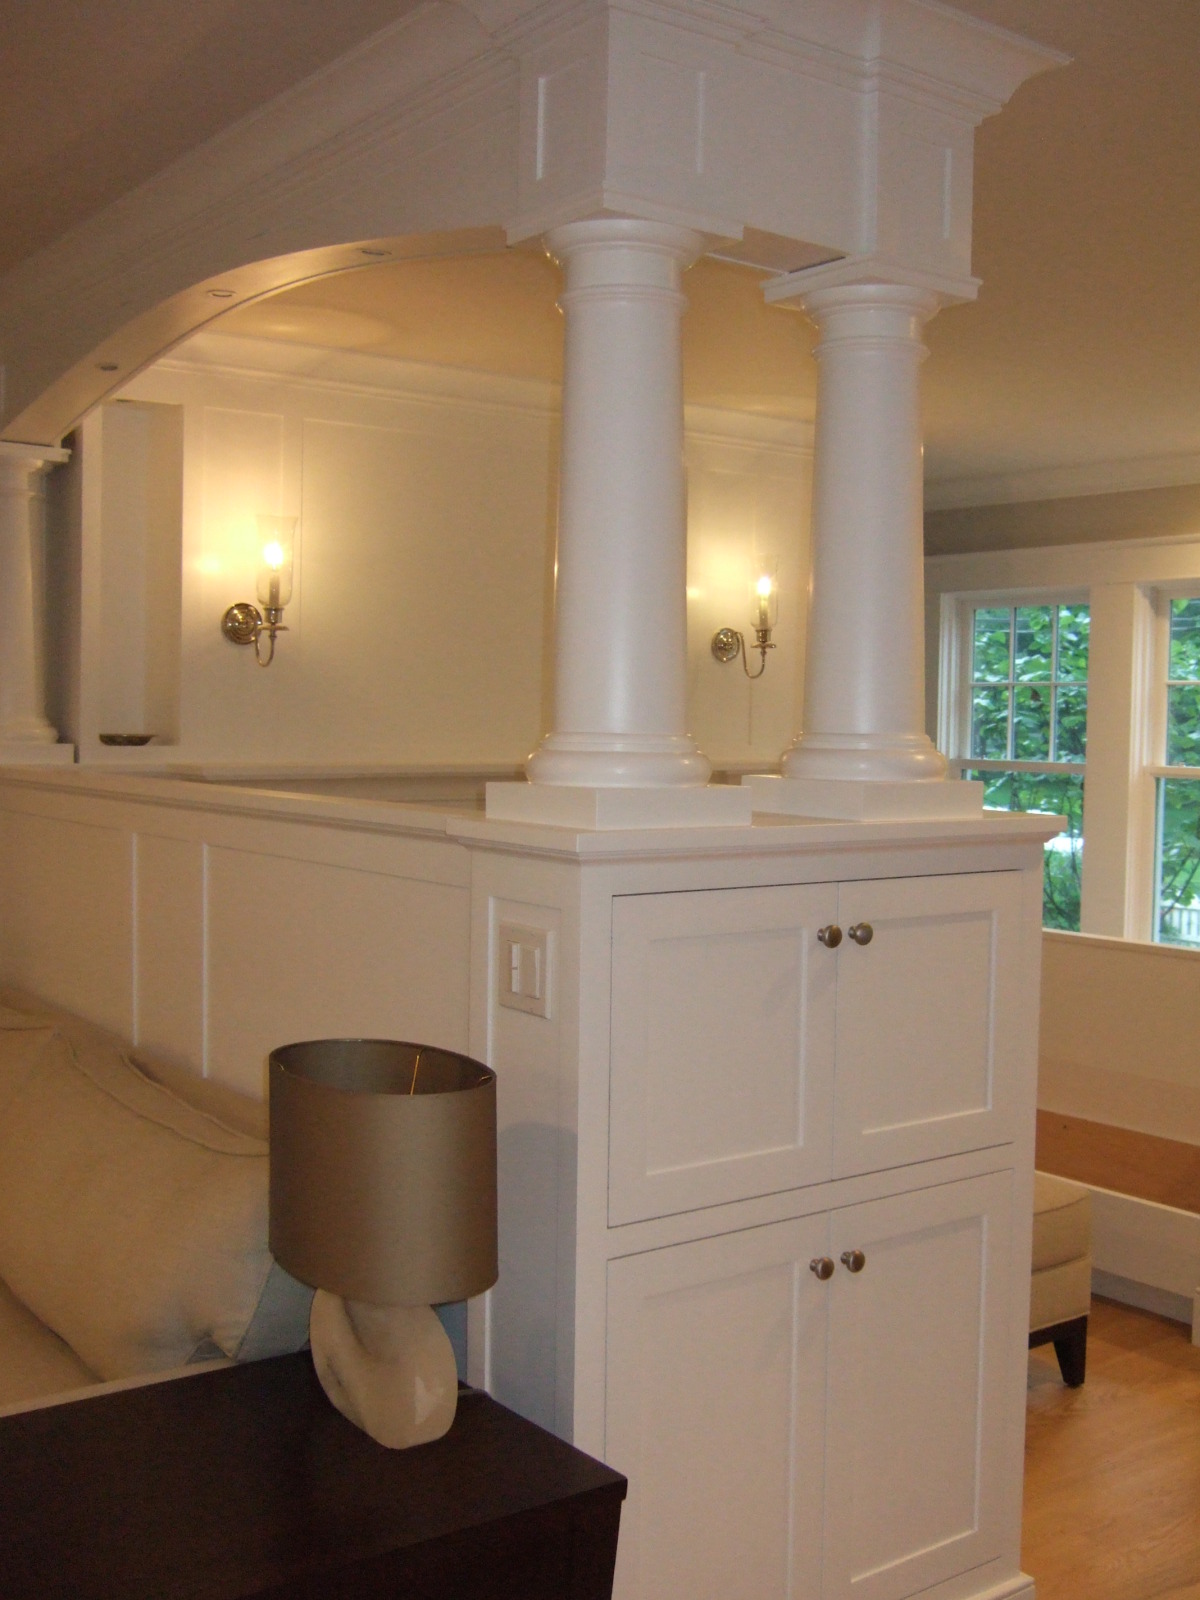 Darien LEED Home - Inglenook columns cabinets